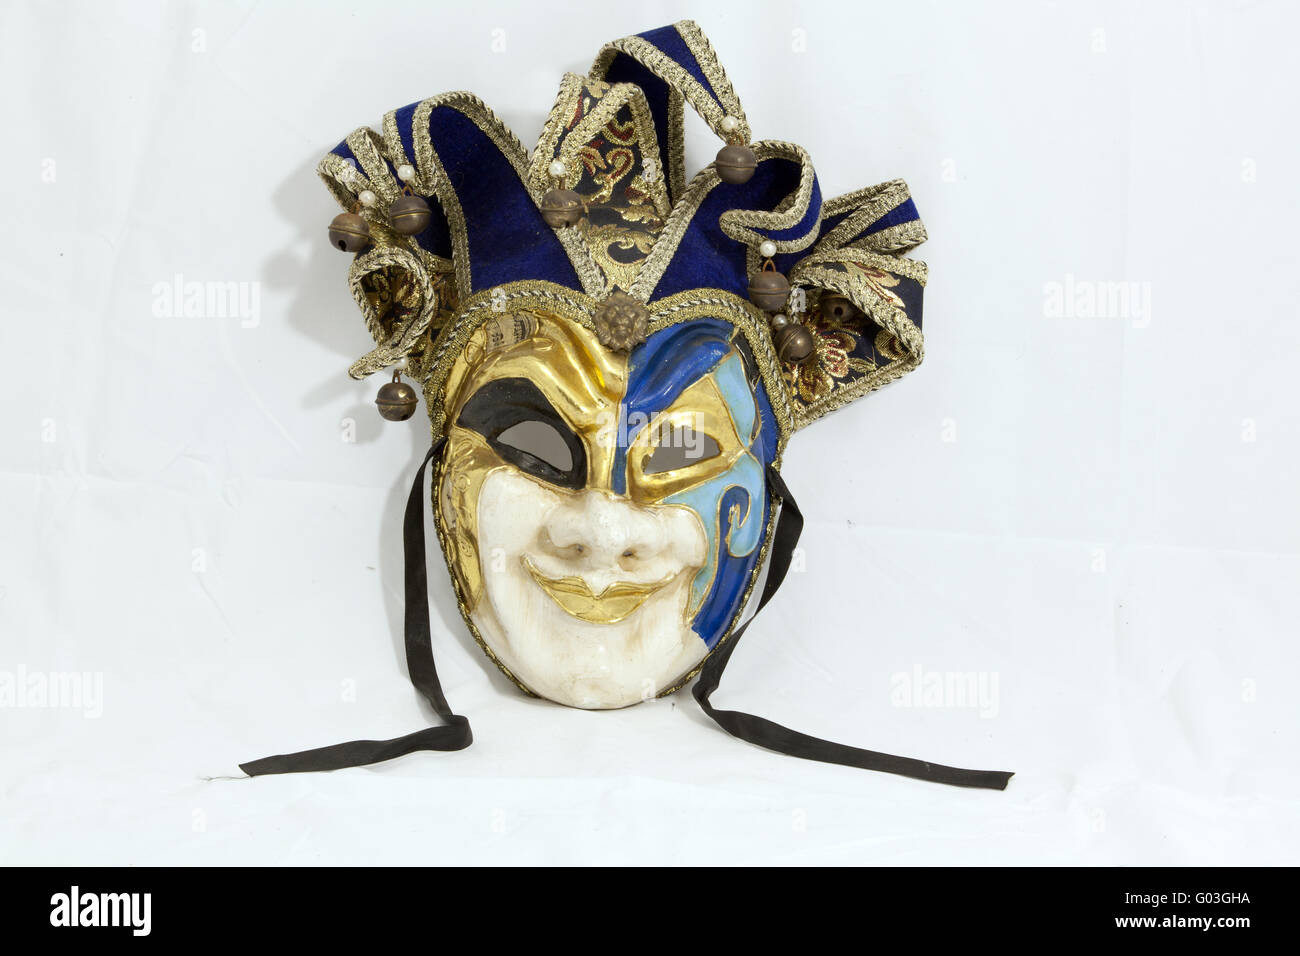 Masque d'halloween ou carnaval sur fond blanc Banque D'Images